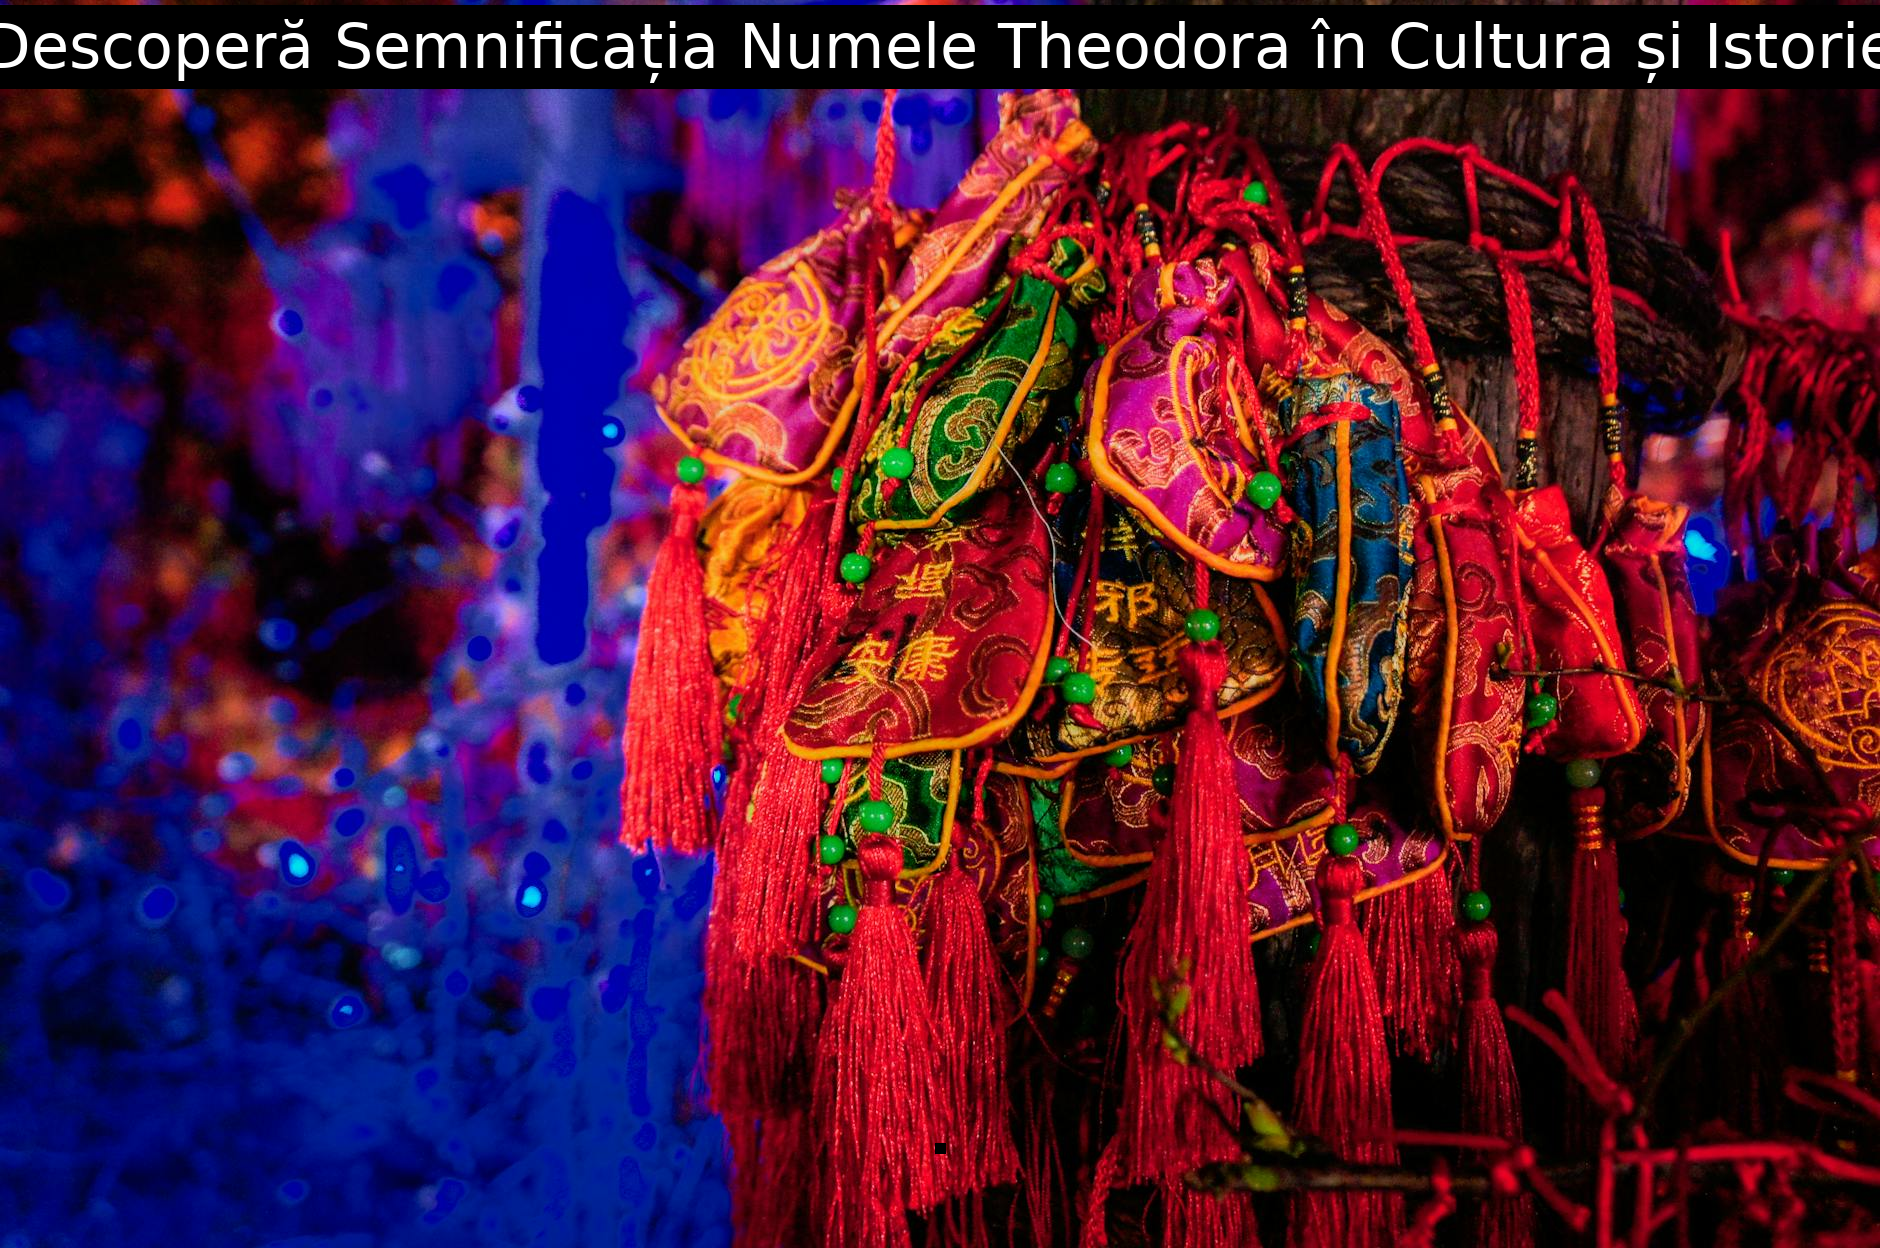 Descoperă Semnificația Numele Theodora în Cultura și Istorie